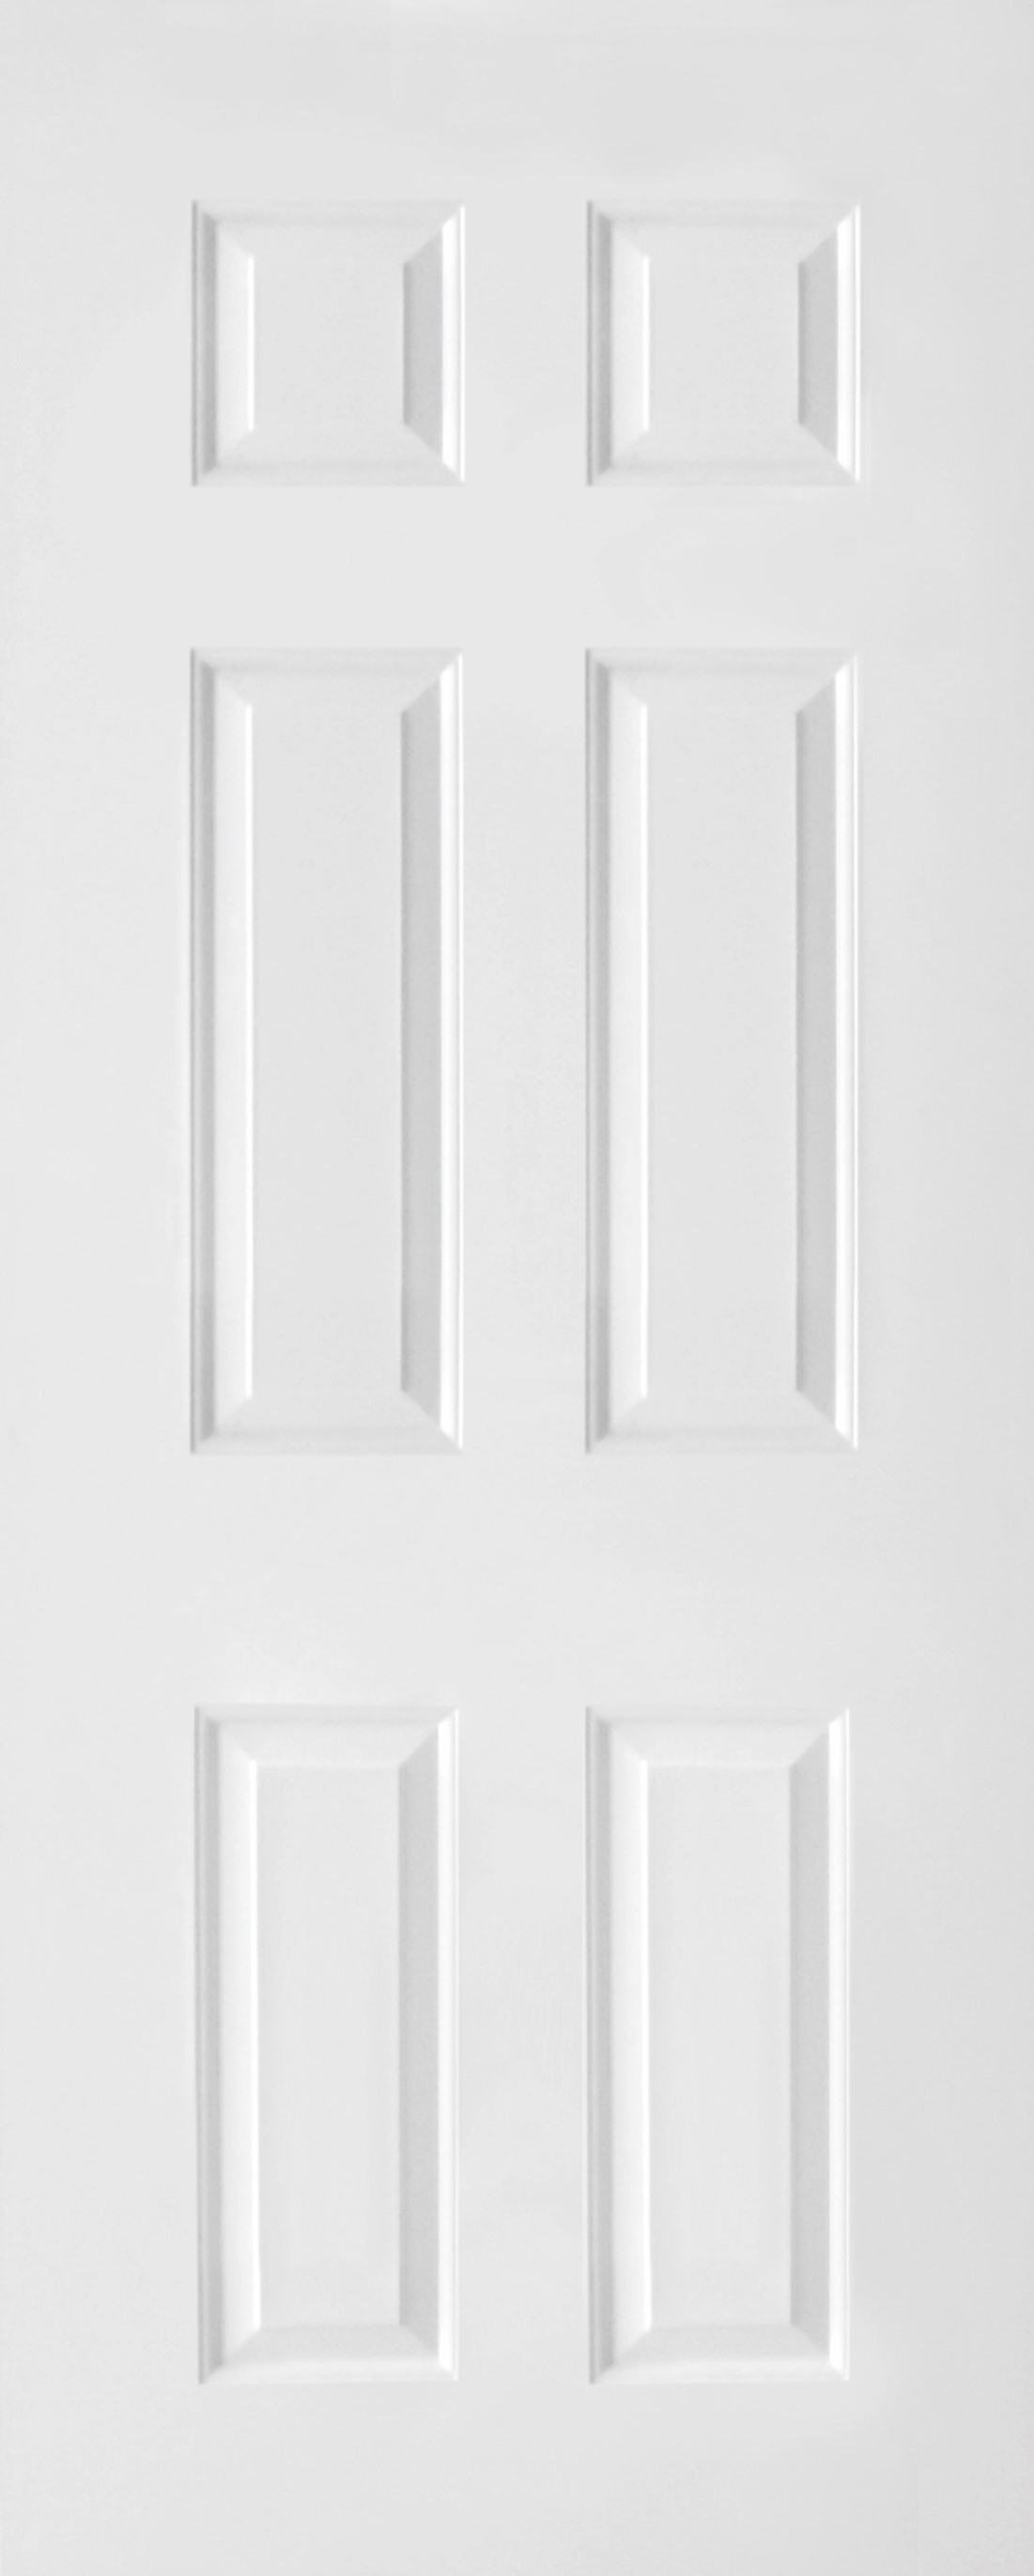 ประตูไม้ HDF บานลูกฟัก 6 ช่องตรง ขนาด 80x200 ซม.